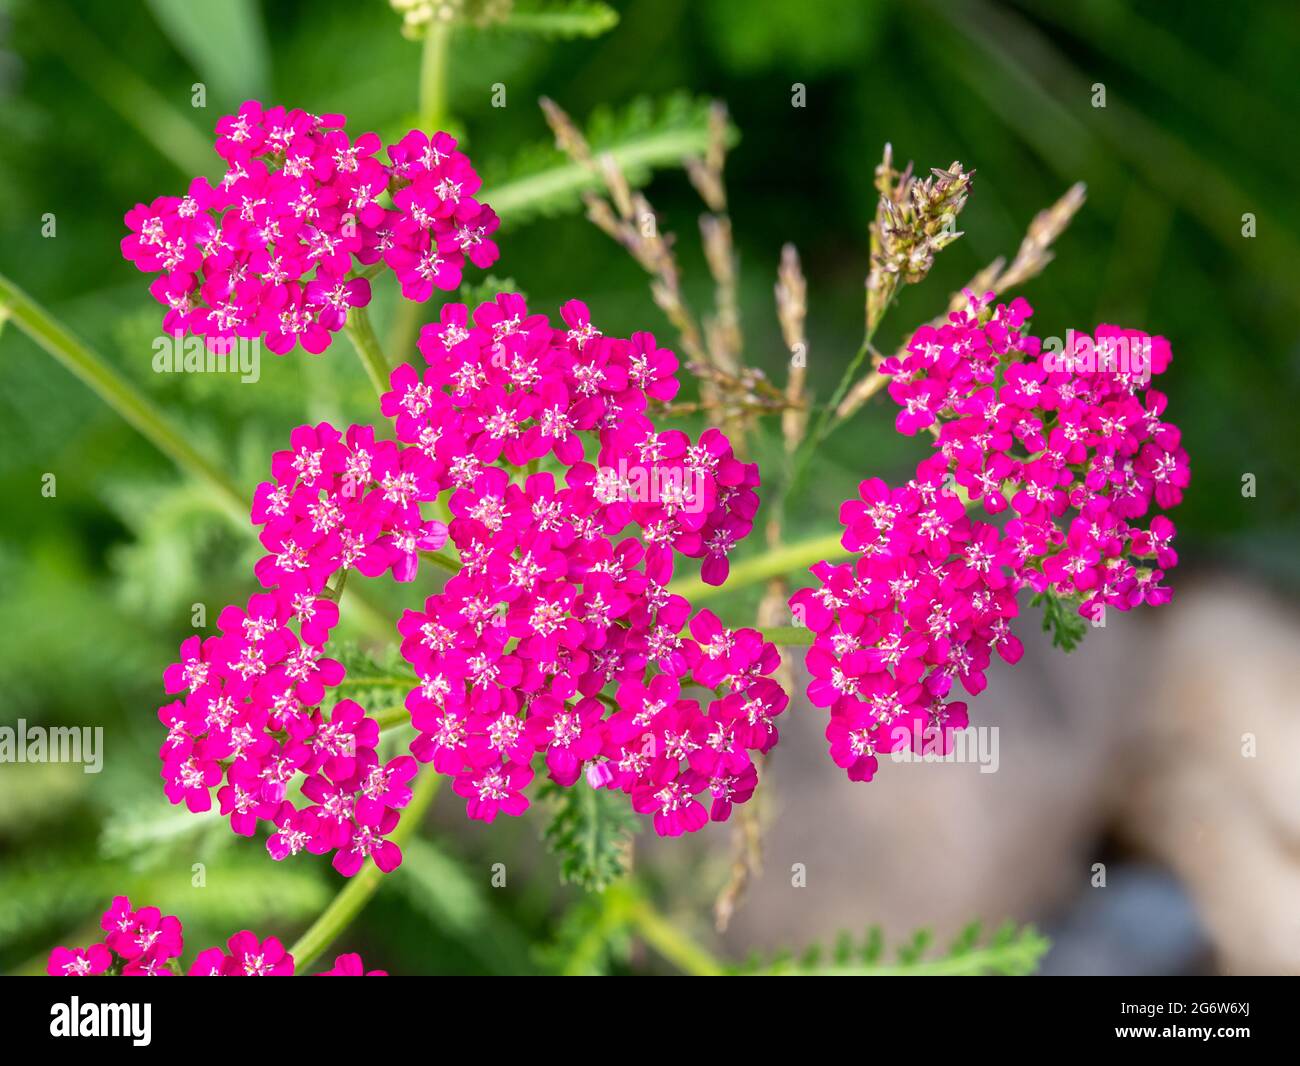 Common yarrow, Achillea millefolium 'cerise queen', native plant